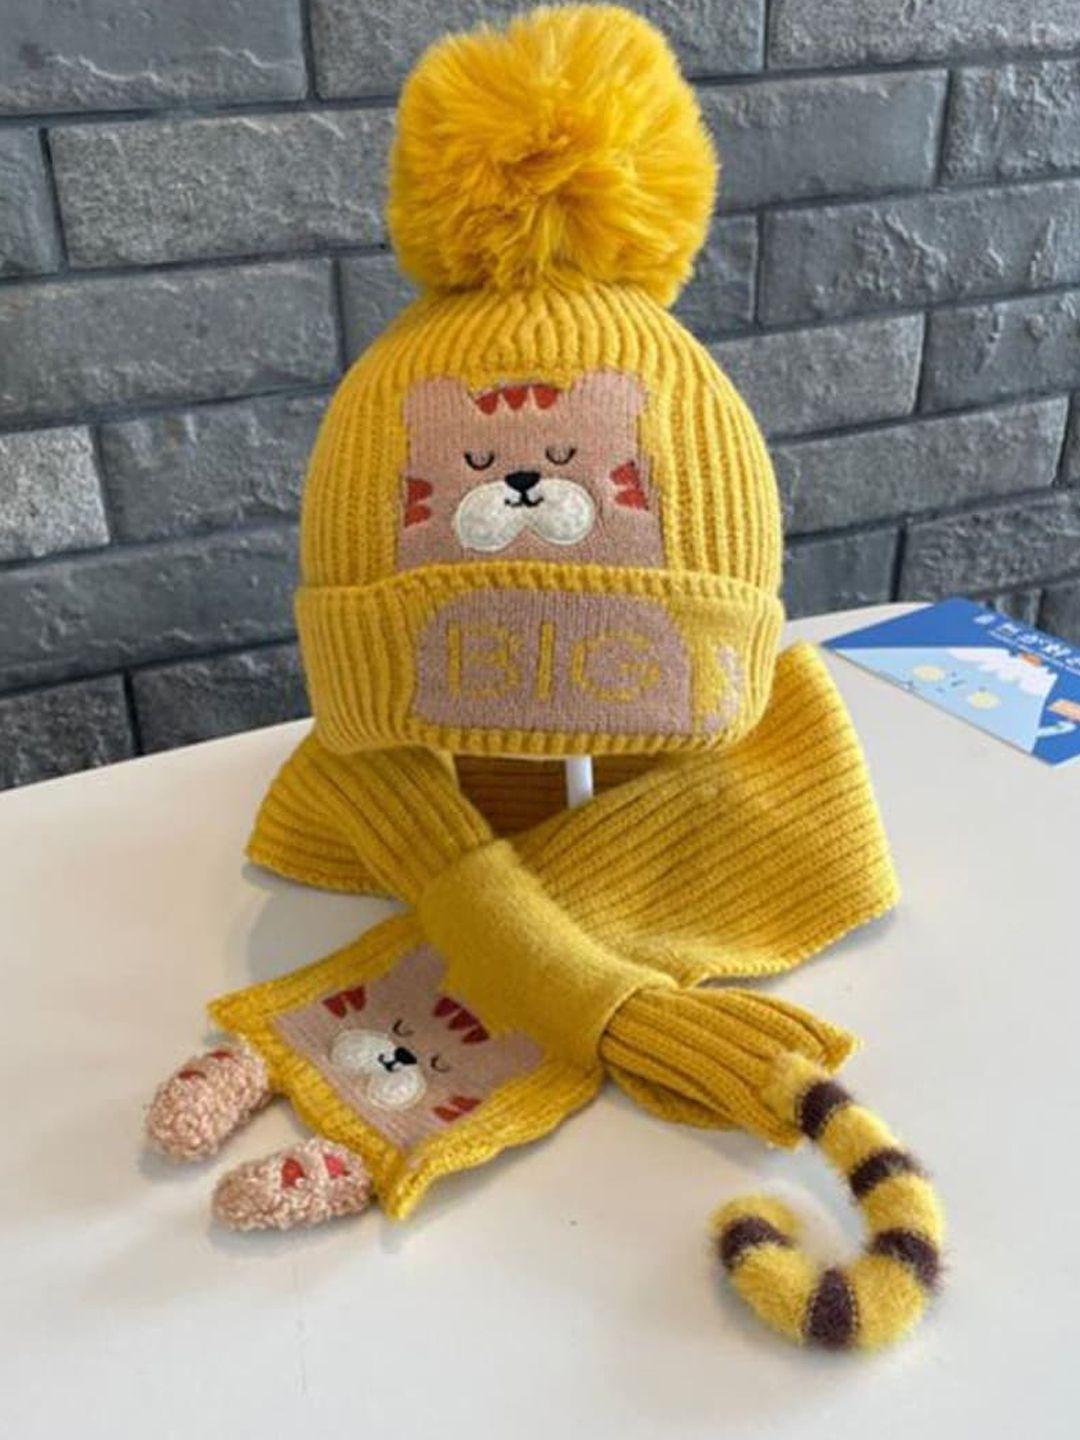 little surprise box llp kids yellow bear woven woolen muffler with cap